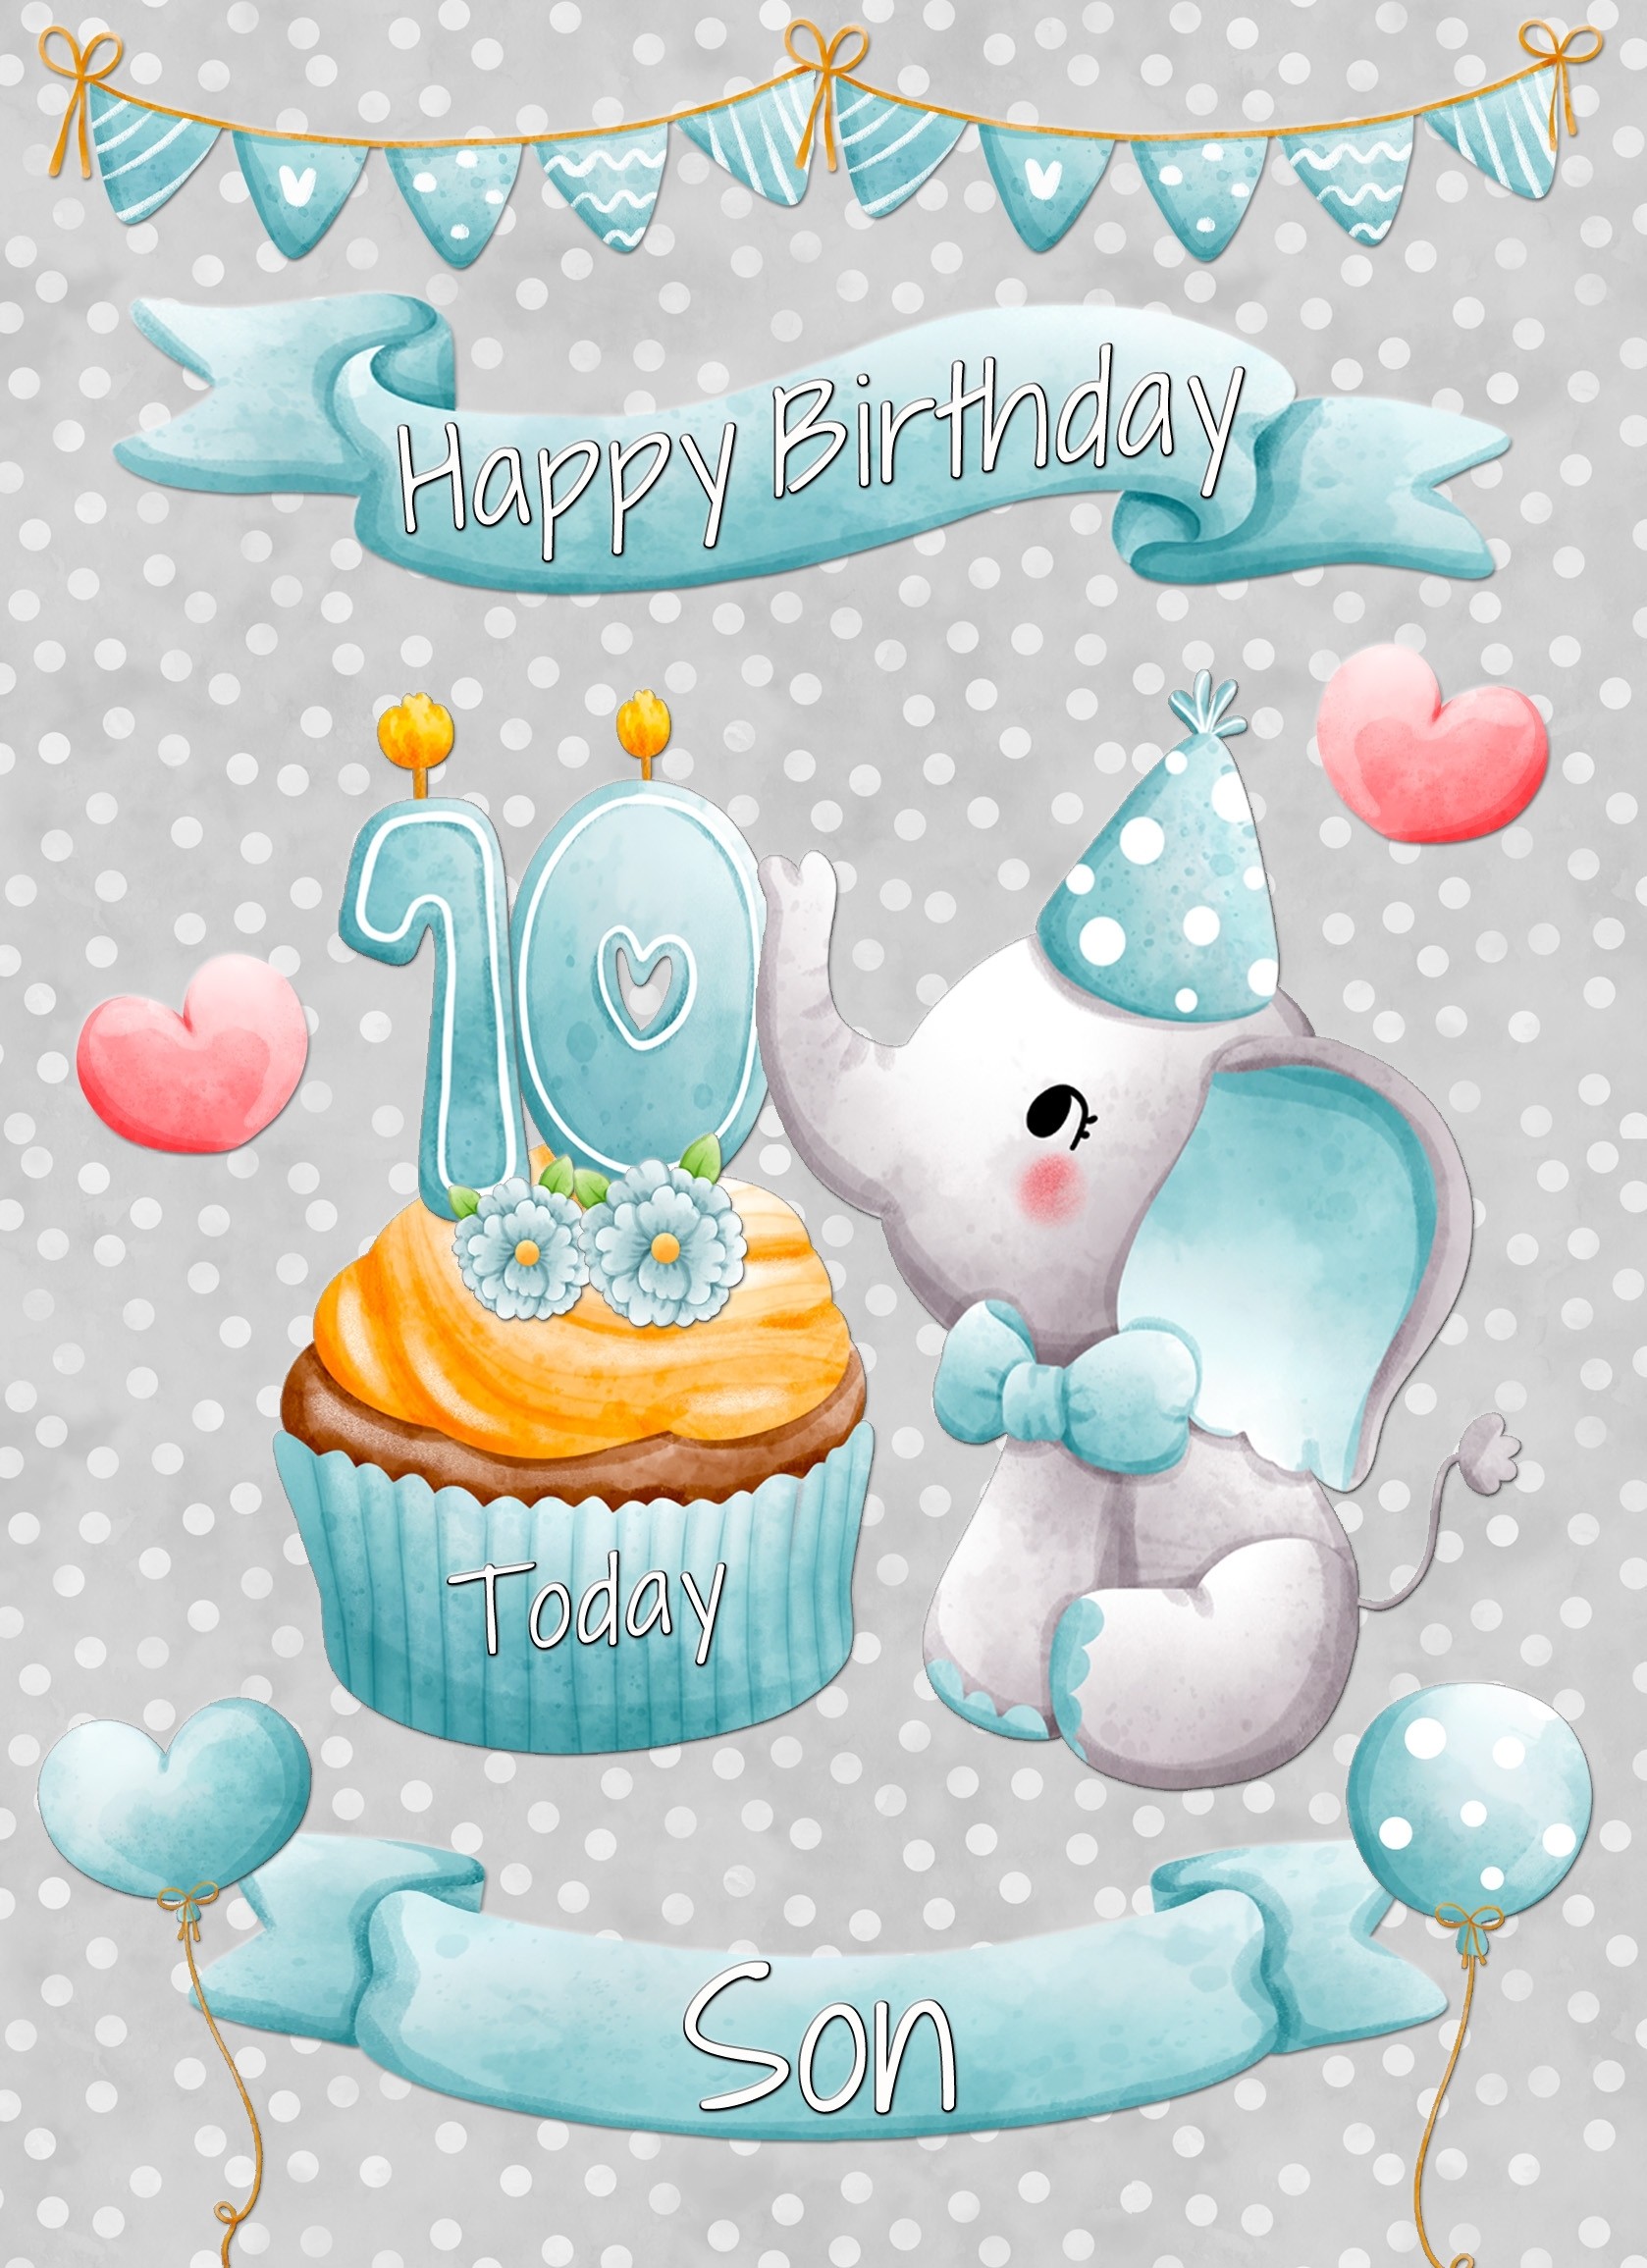 Son 10th Birthday Card (Grey Elephant)